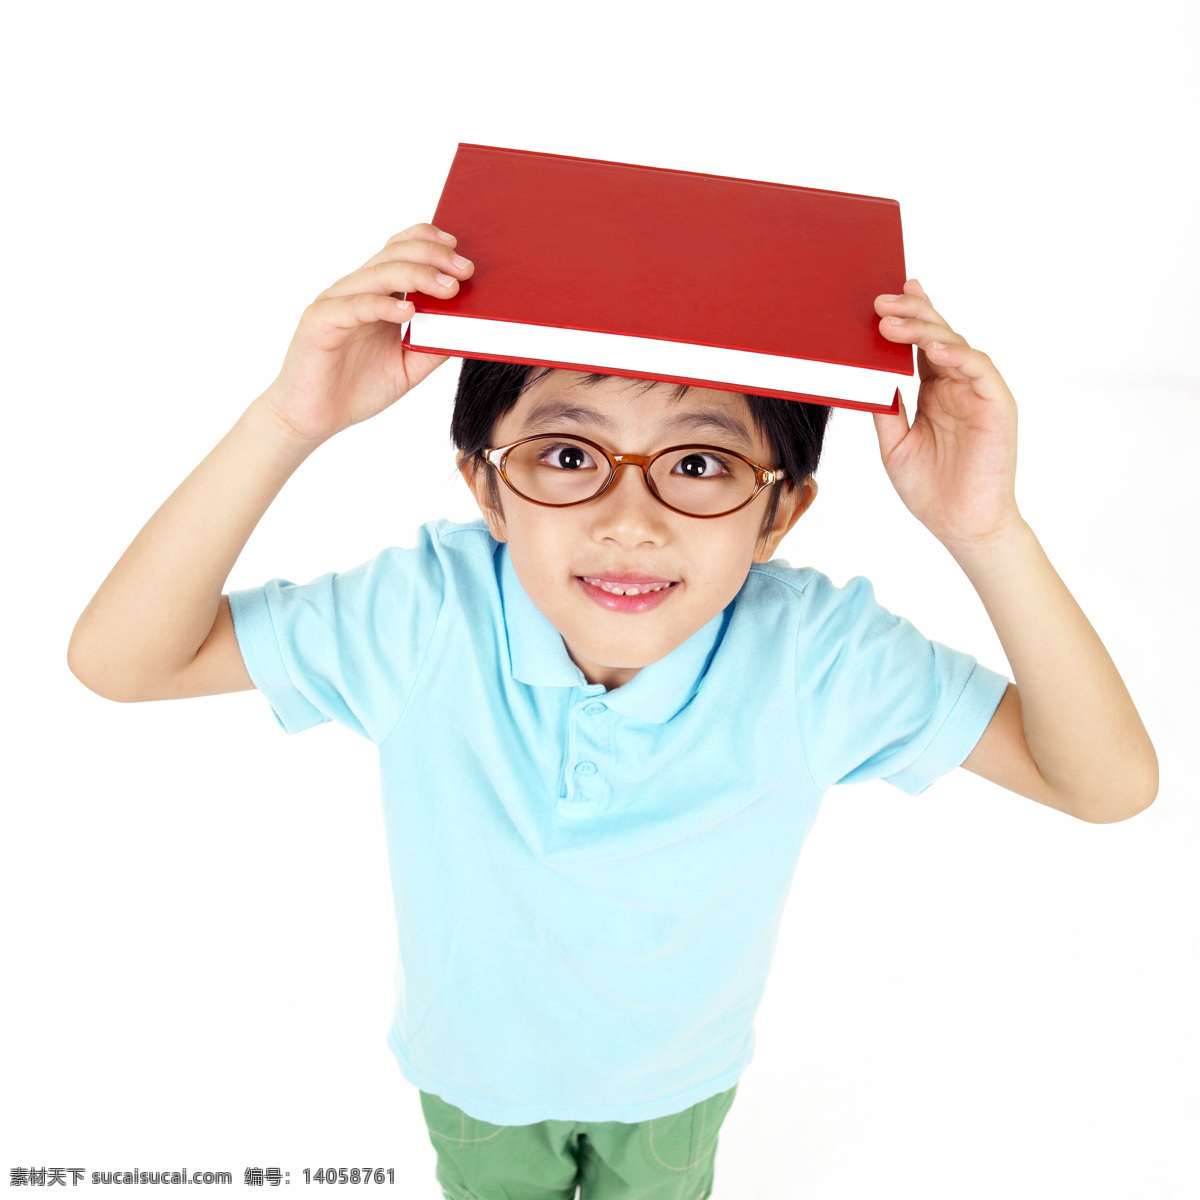 头顶 书本 小 男孩 男生 眼镜 蓝色 红色 t恤 可爱 可爱的小孩 儿童幼儿 人物图库